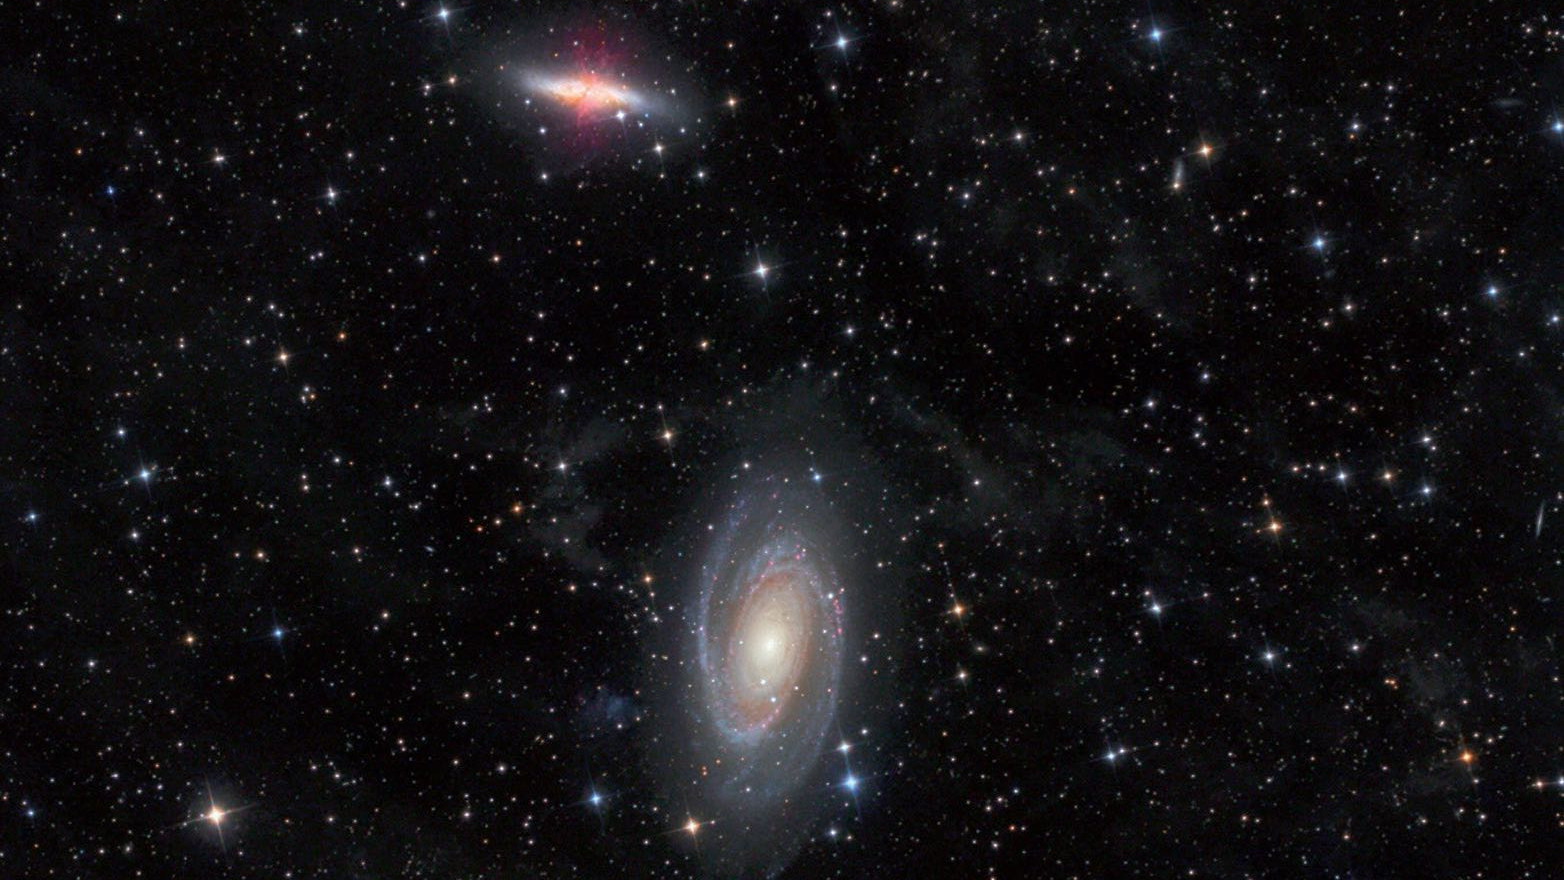 Die Galaxien M 81 und M 82 im Sternbild Großer Bär aufgenommen mit einem 4,5 Zoll Newton-Teleskop bei 440mm Brennweite. Michael Deger / CCD Guide